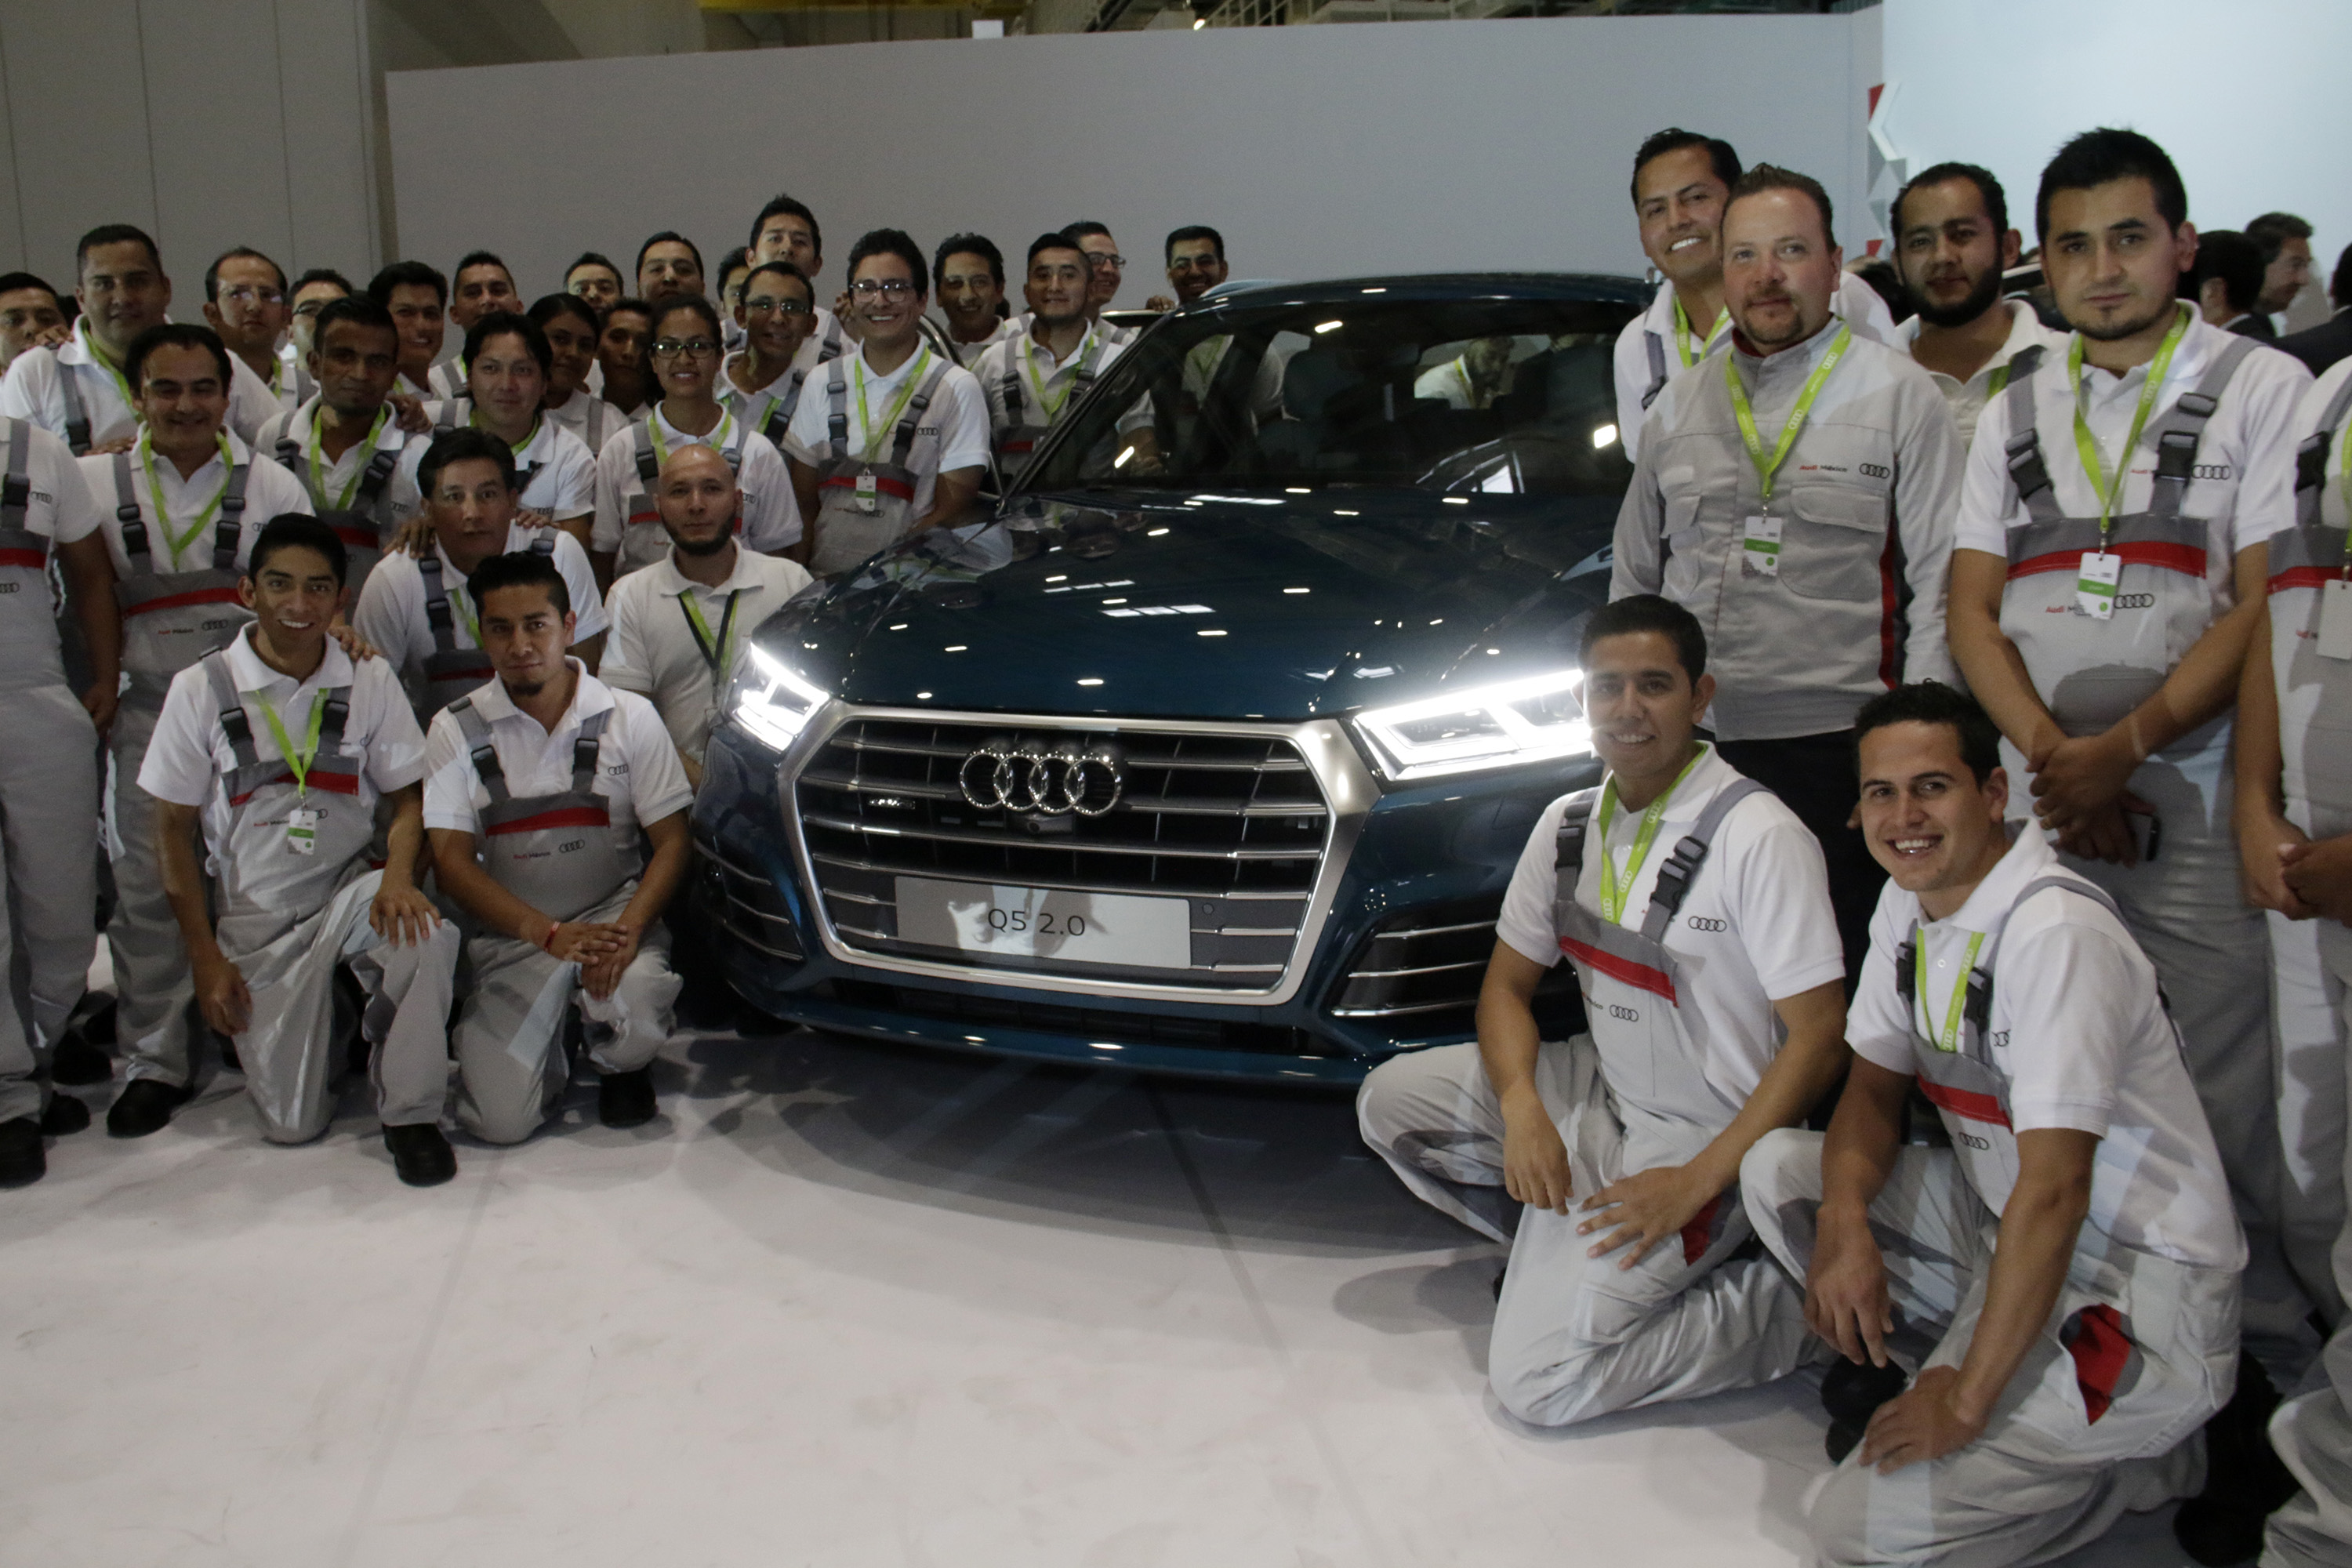 México, nación en auge para sector automotriz, dice CEO de Audi en inauguración